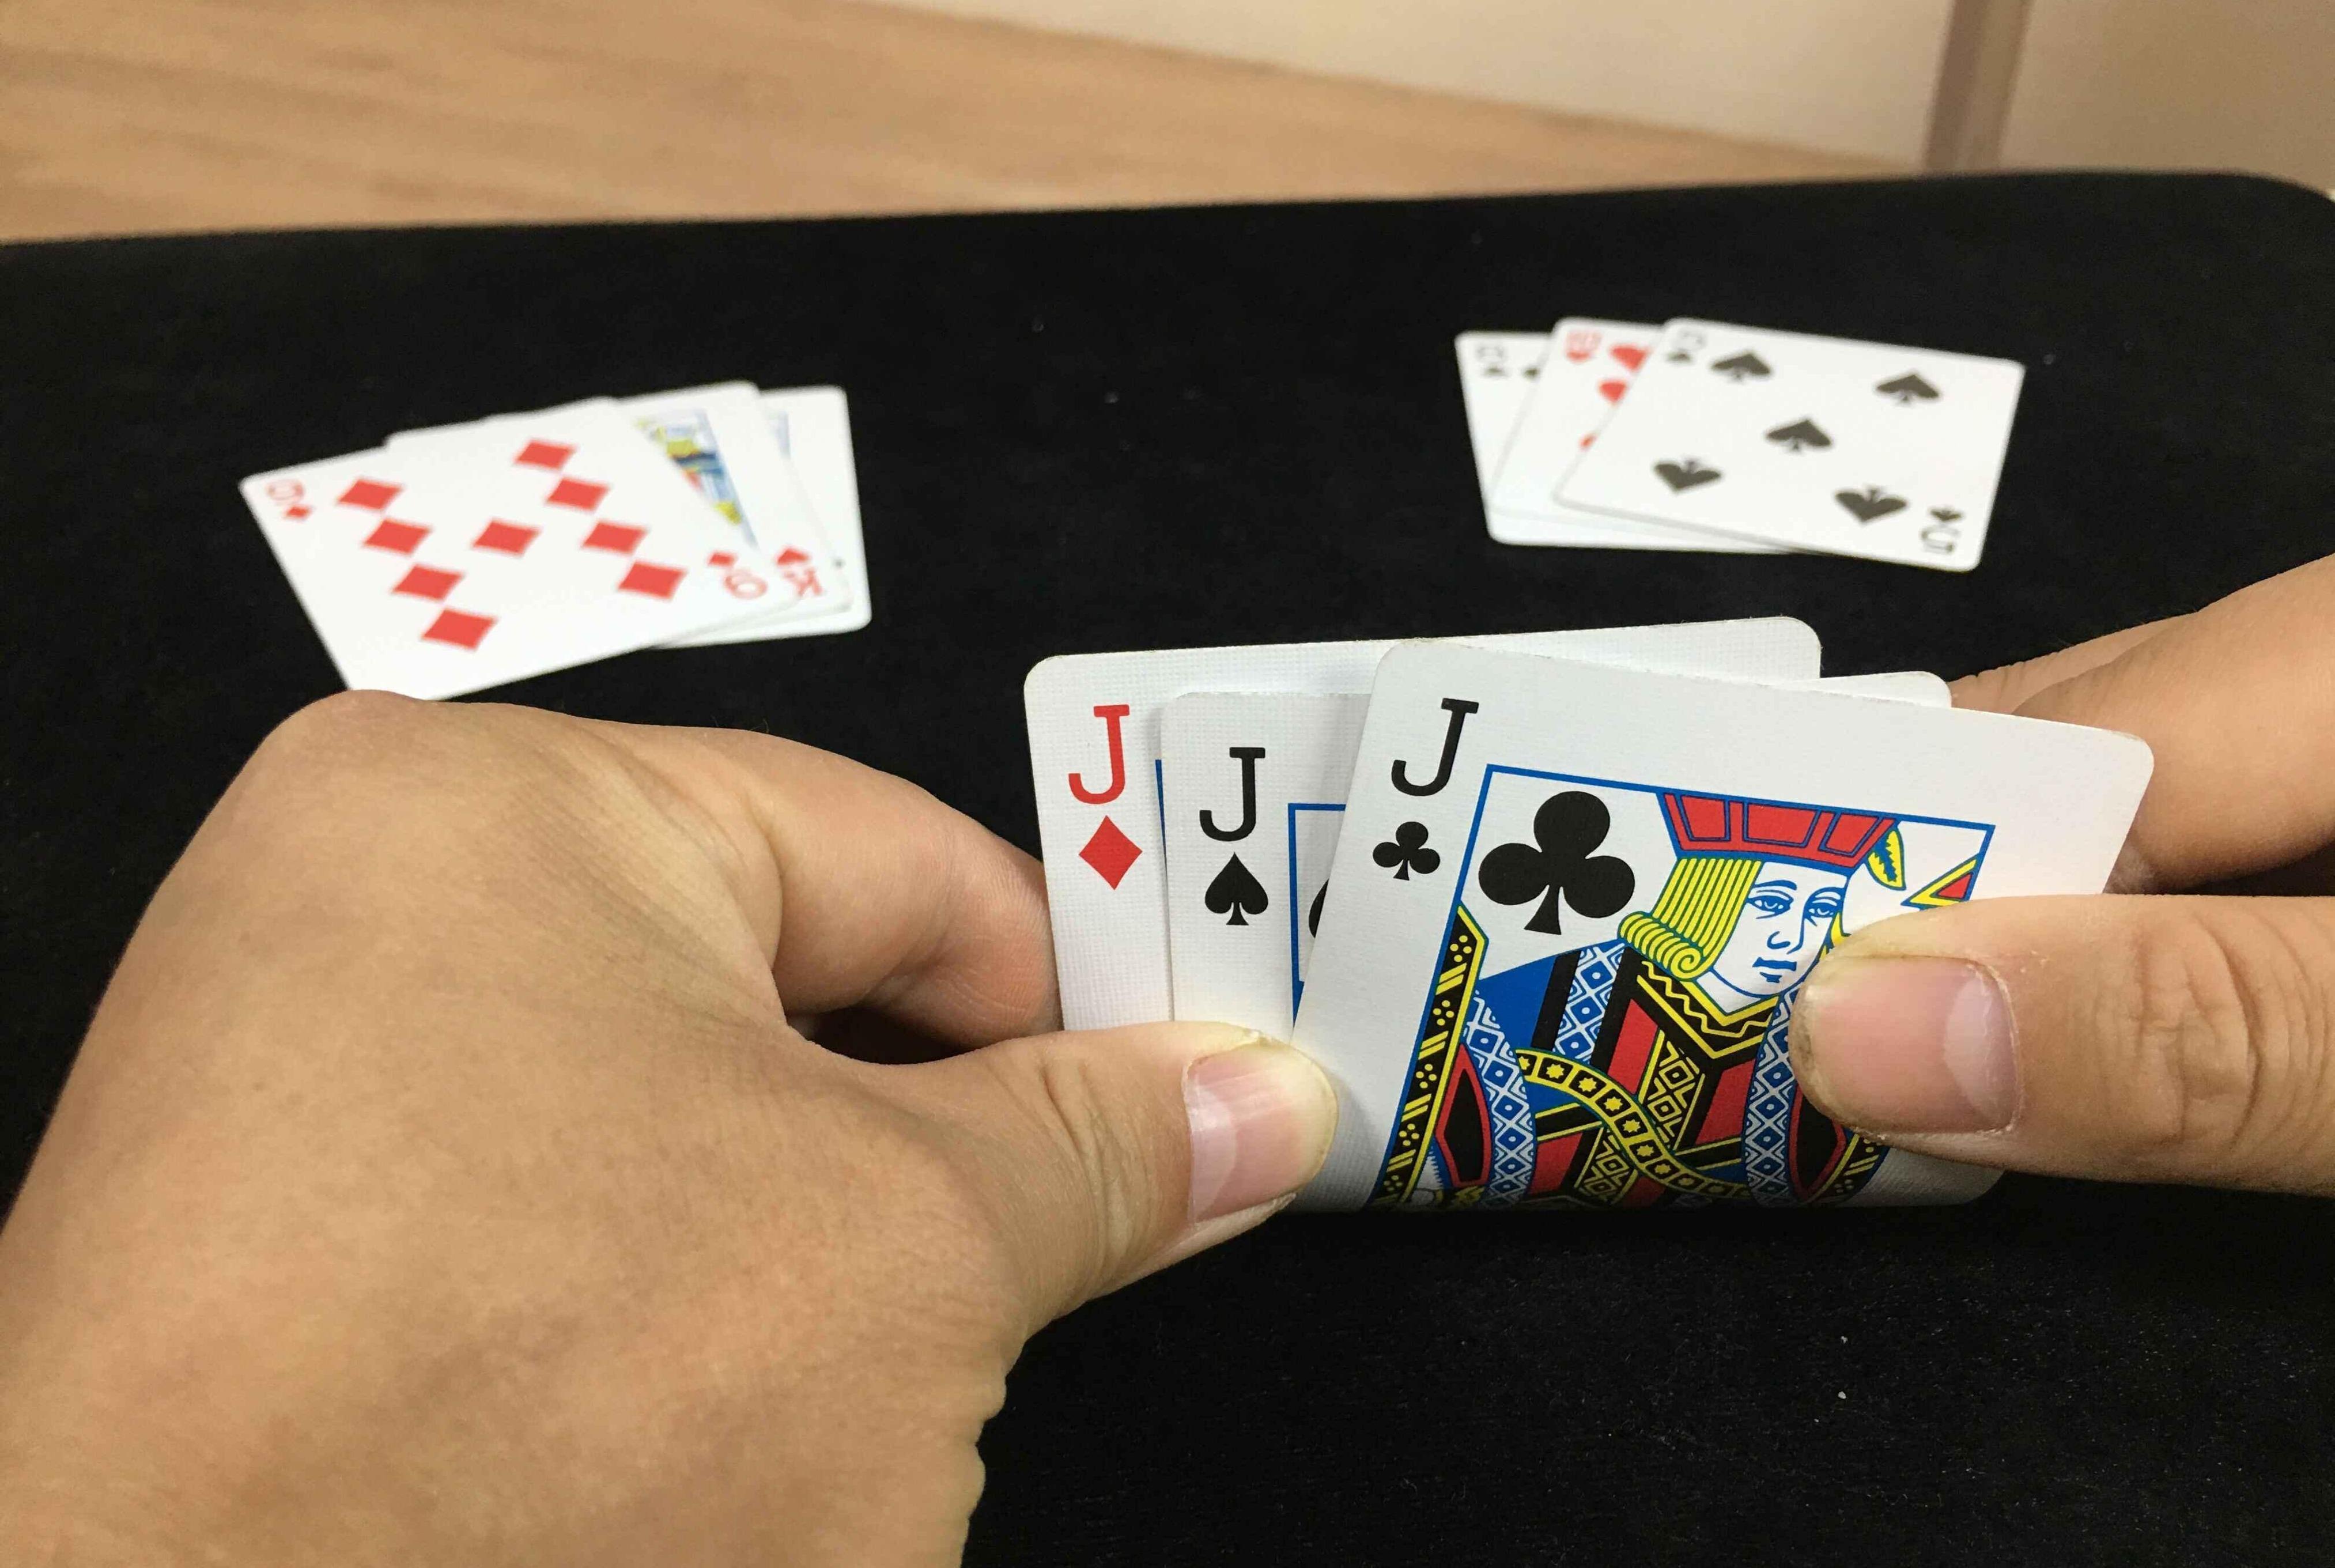 扑克魔术变牌手法,换牌技巧,牌技手法技巧教学揭秘